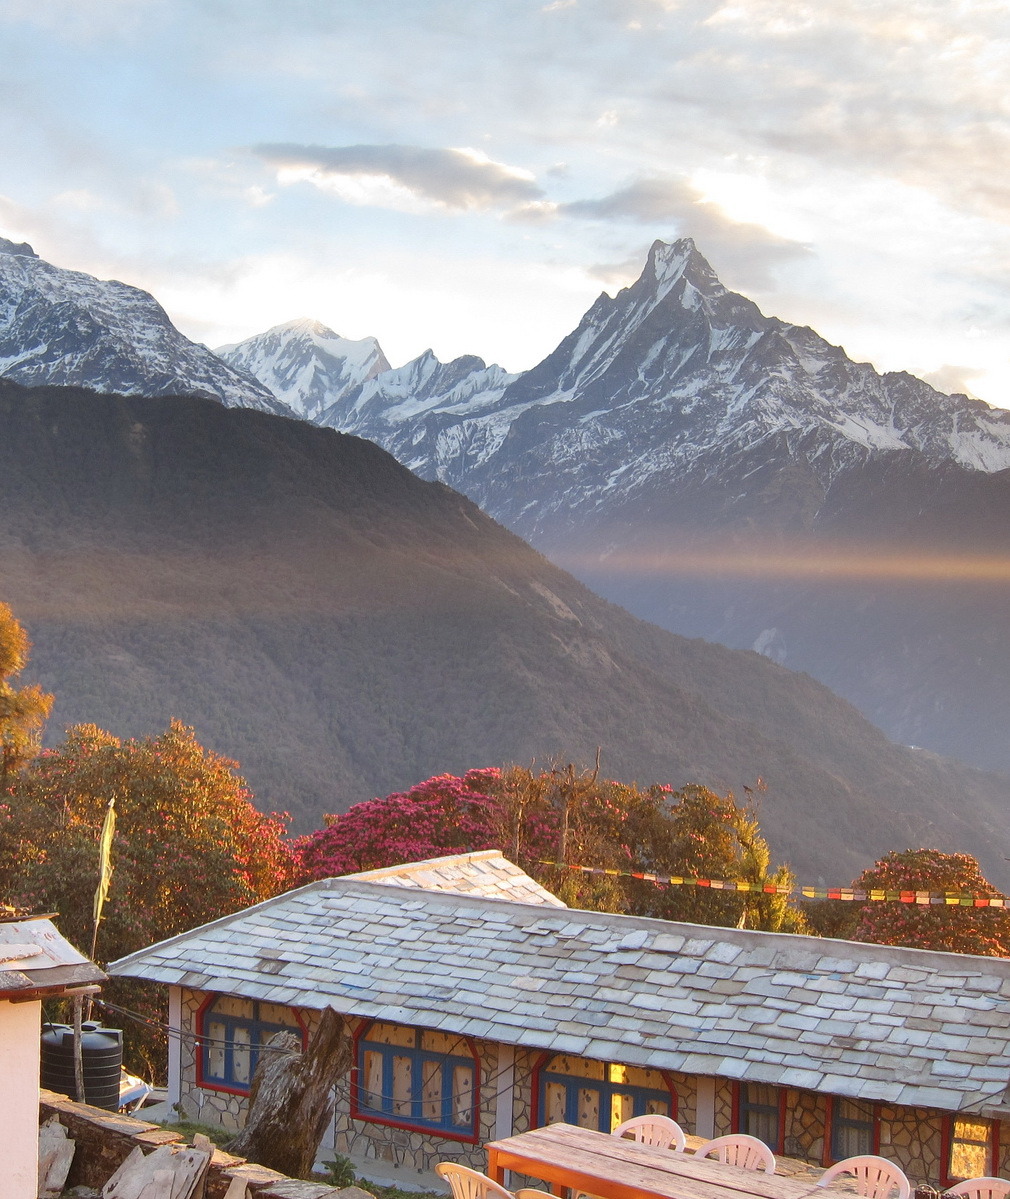 View of Machapuchare from Tadapani, Himalayas, Nepal